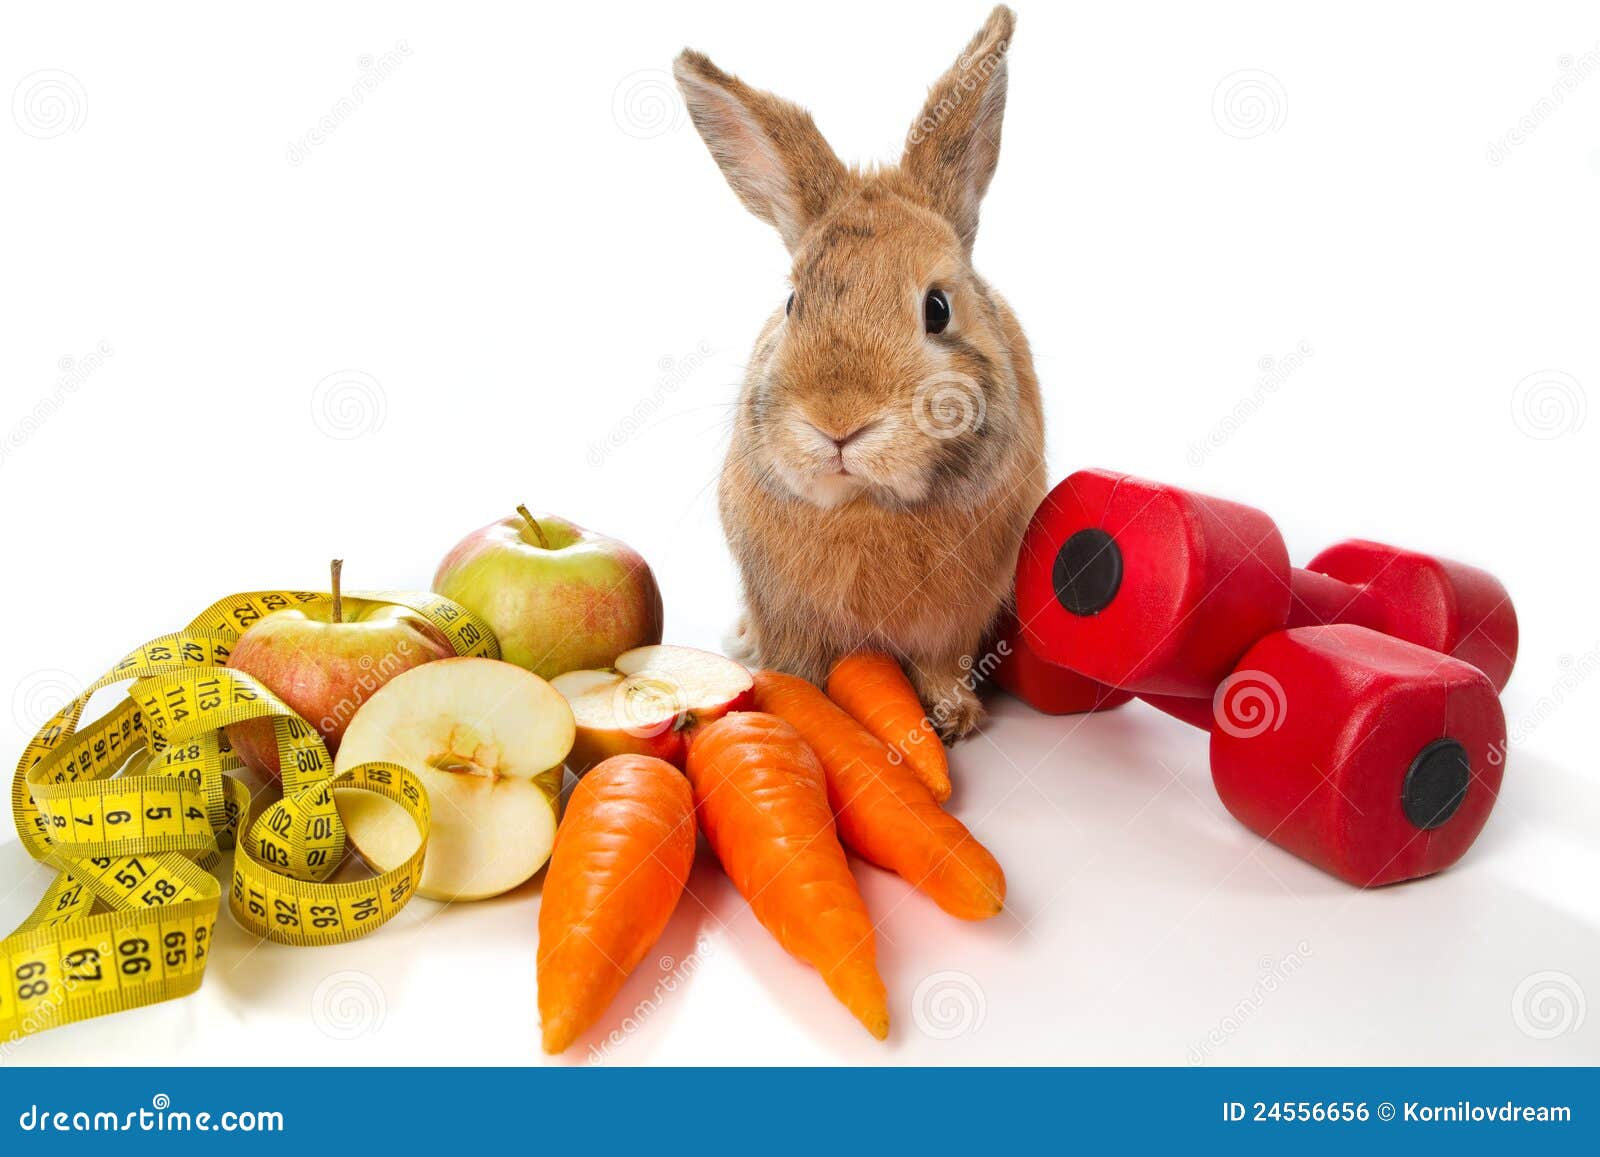 Про зайчишку и овощи. Кролик с овощами. Кролик с яблоками. Зайчик с овощами. Кролик с овощами на белом фоне.